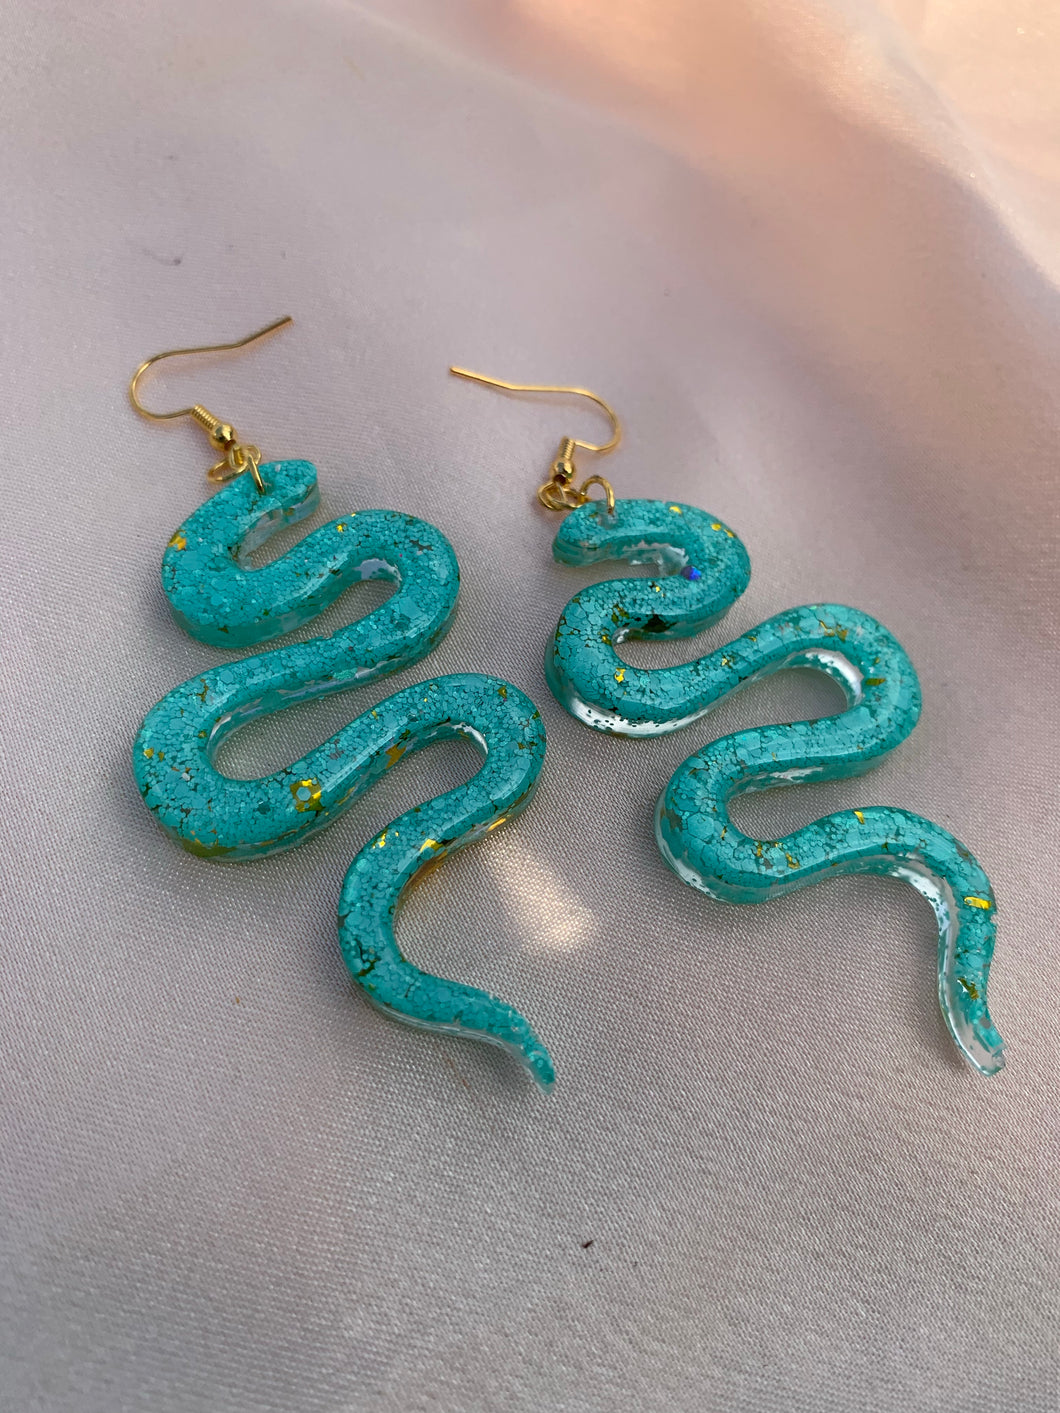 Turquoise snake earrings